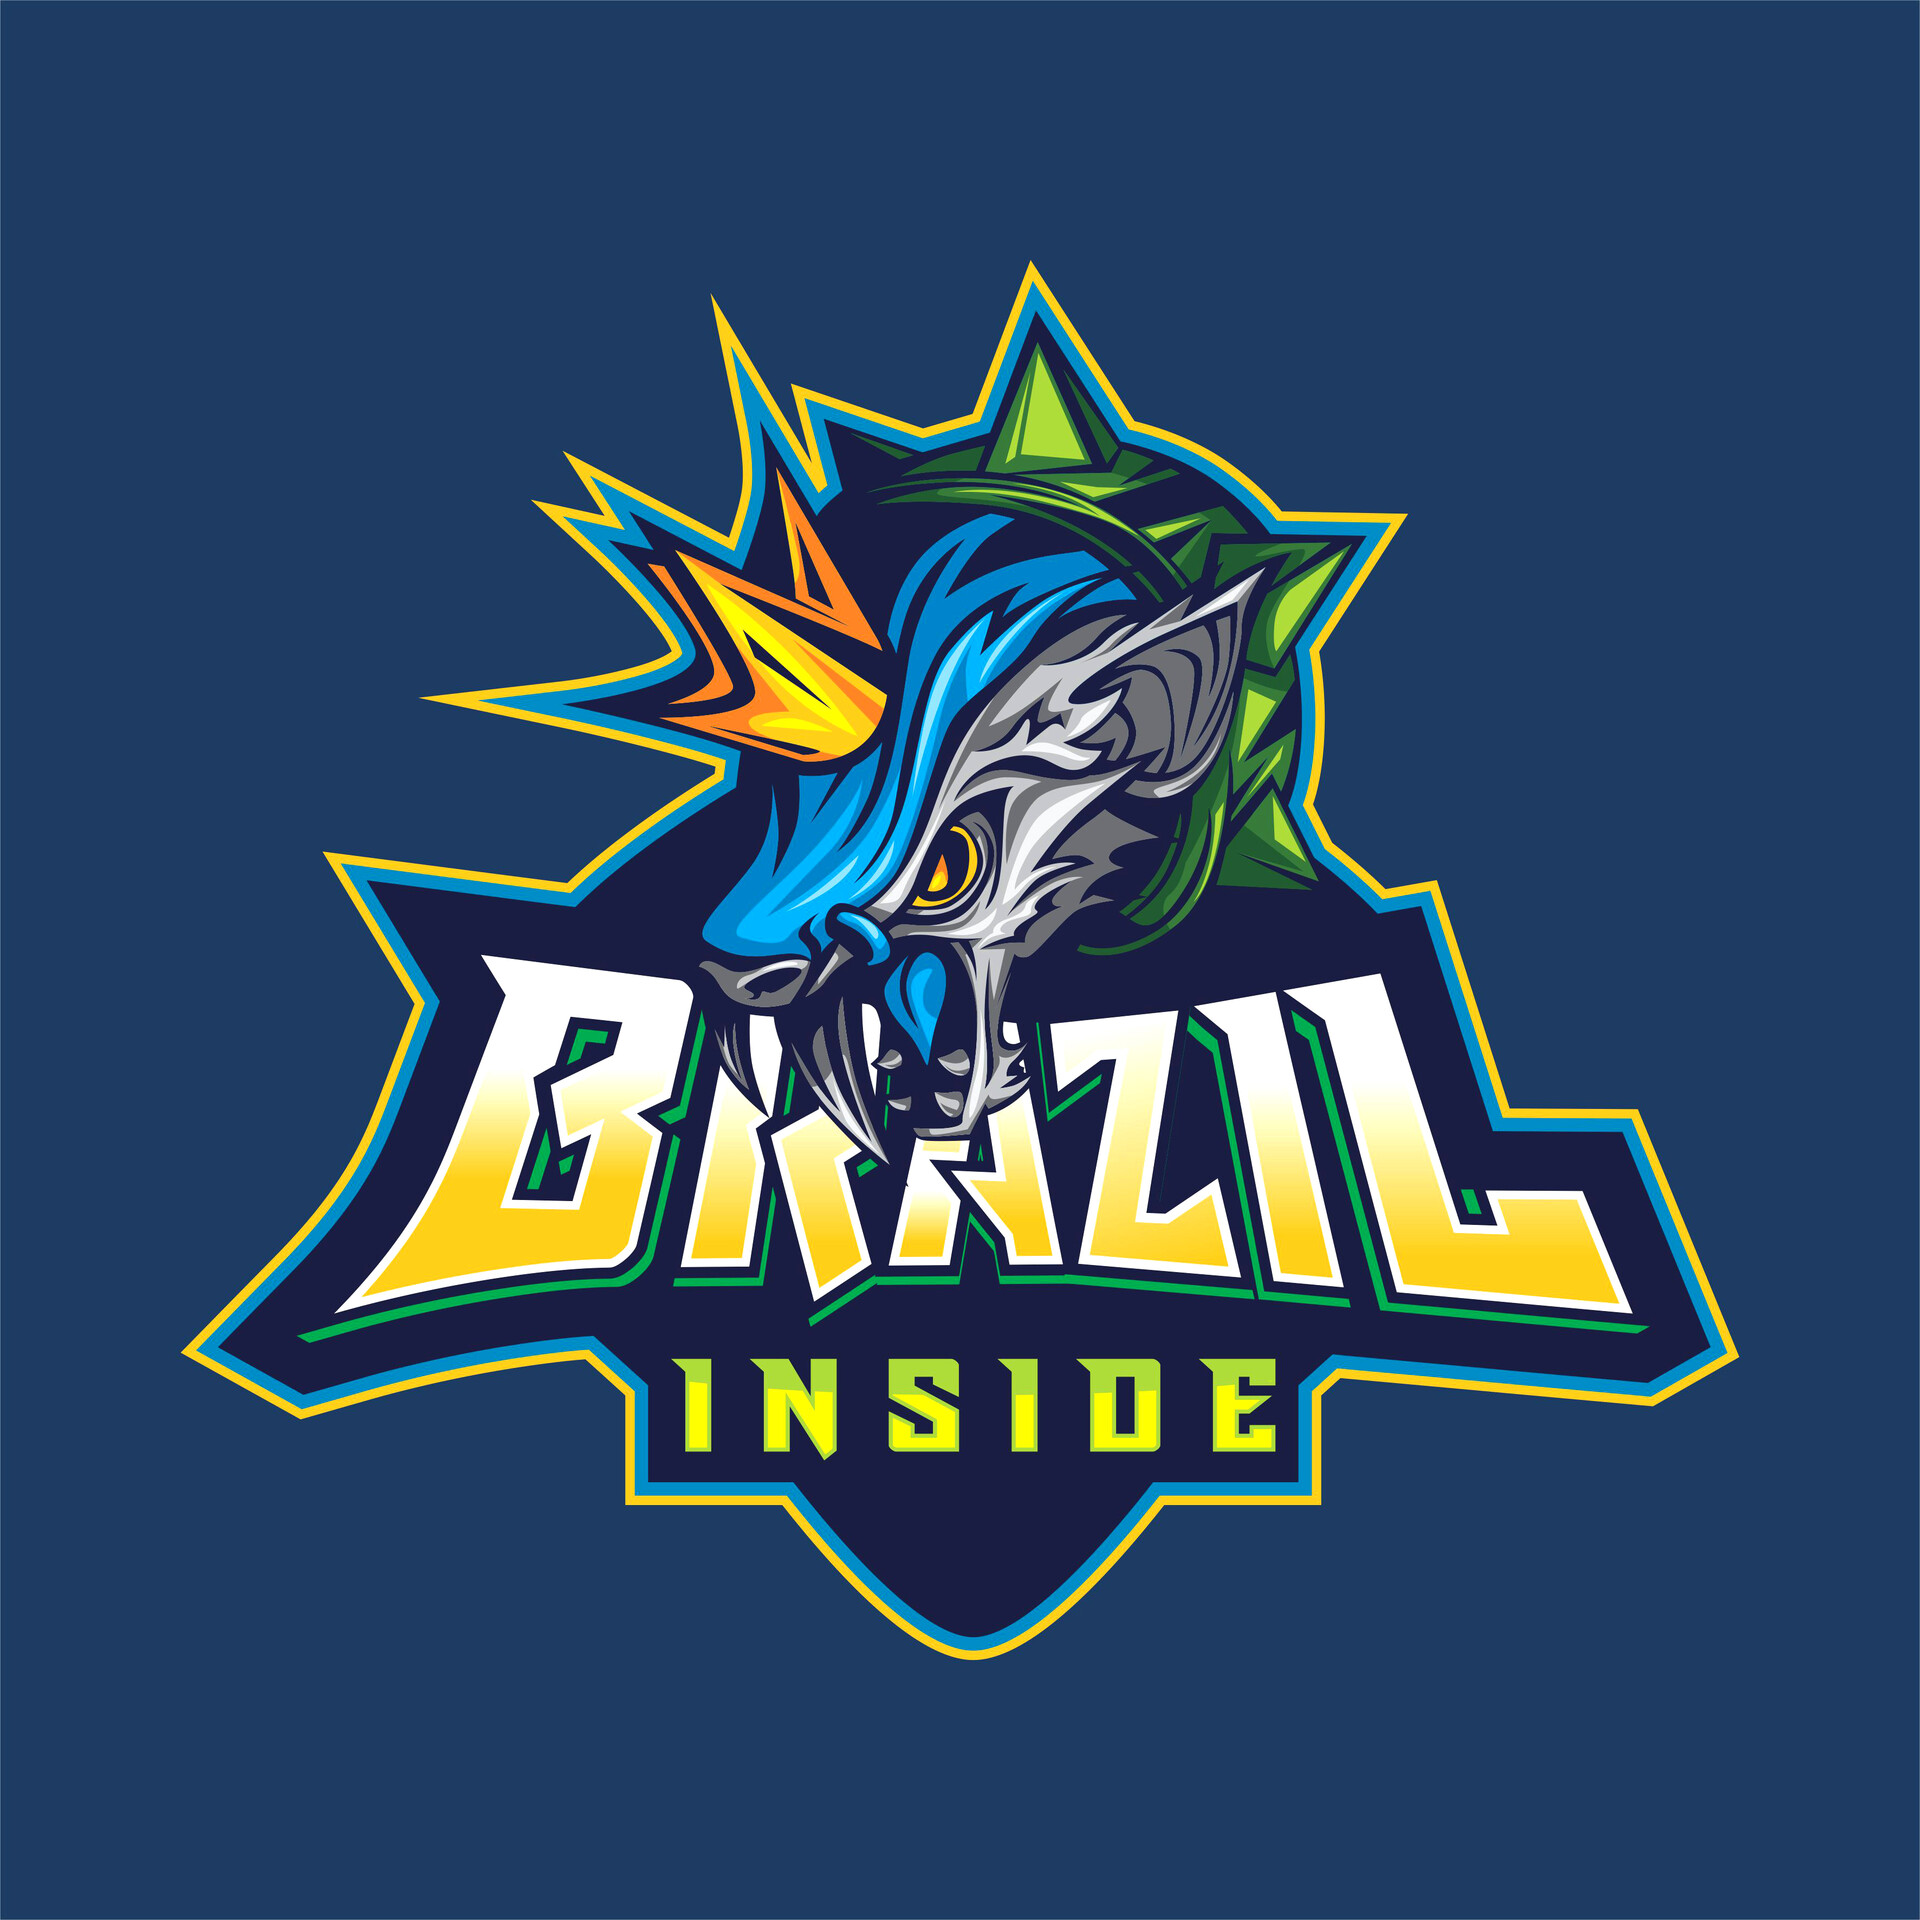 ArtStation - Creation of the E-Sports logo: Guild Brazil Inside.